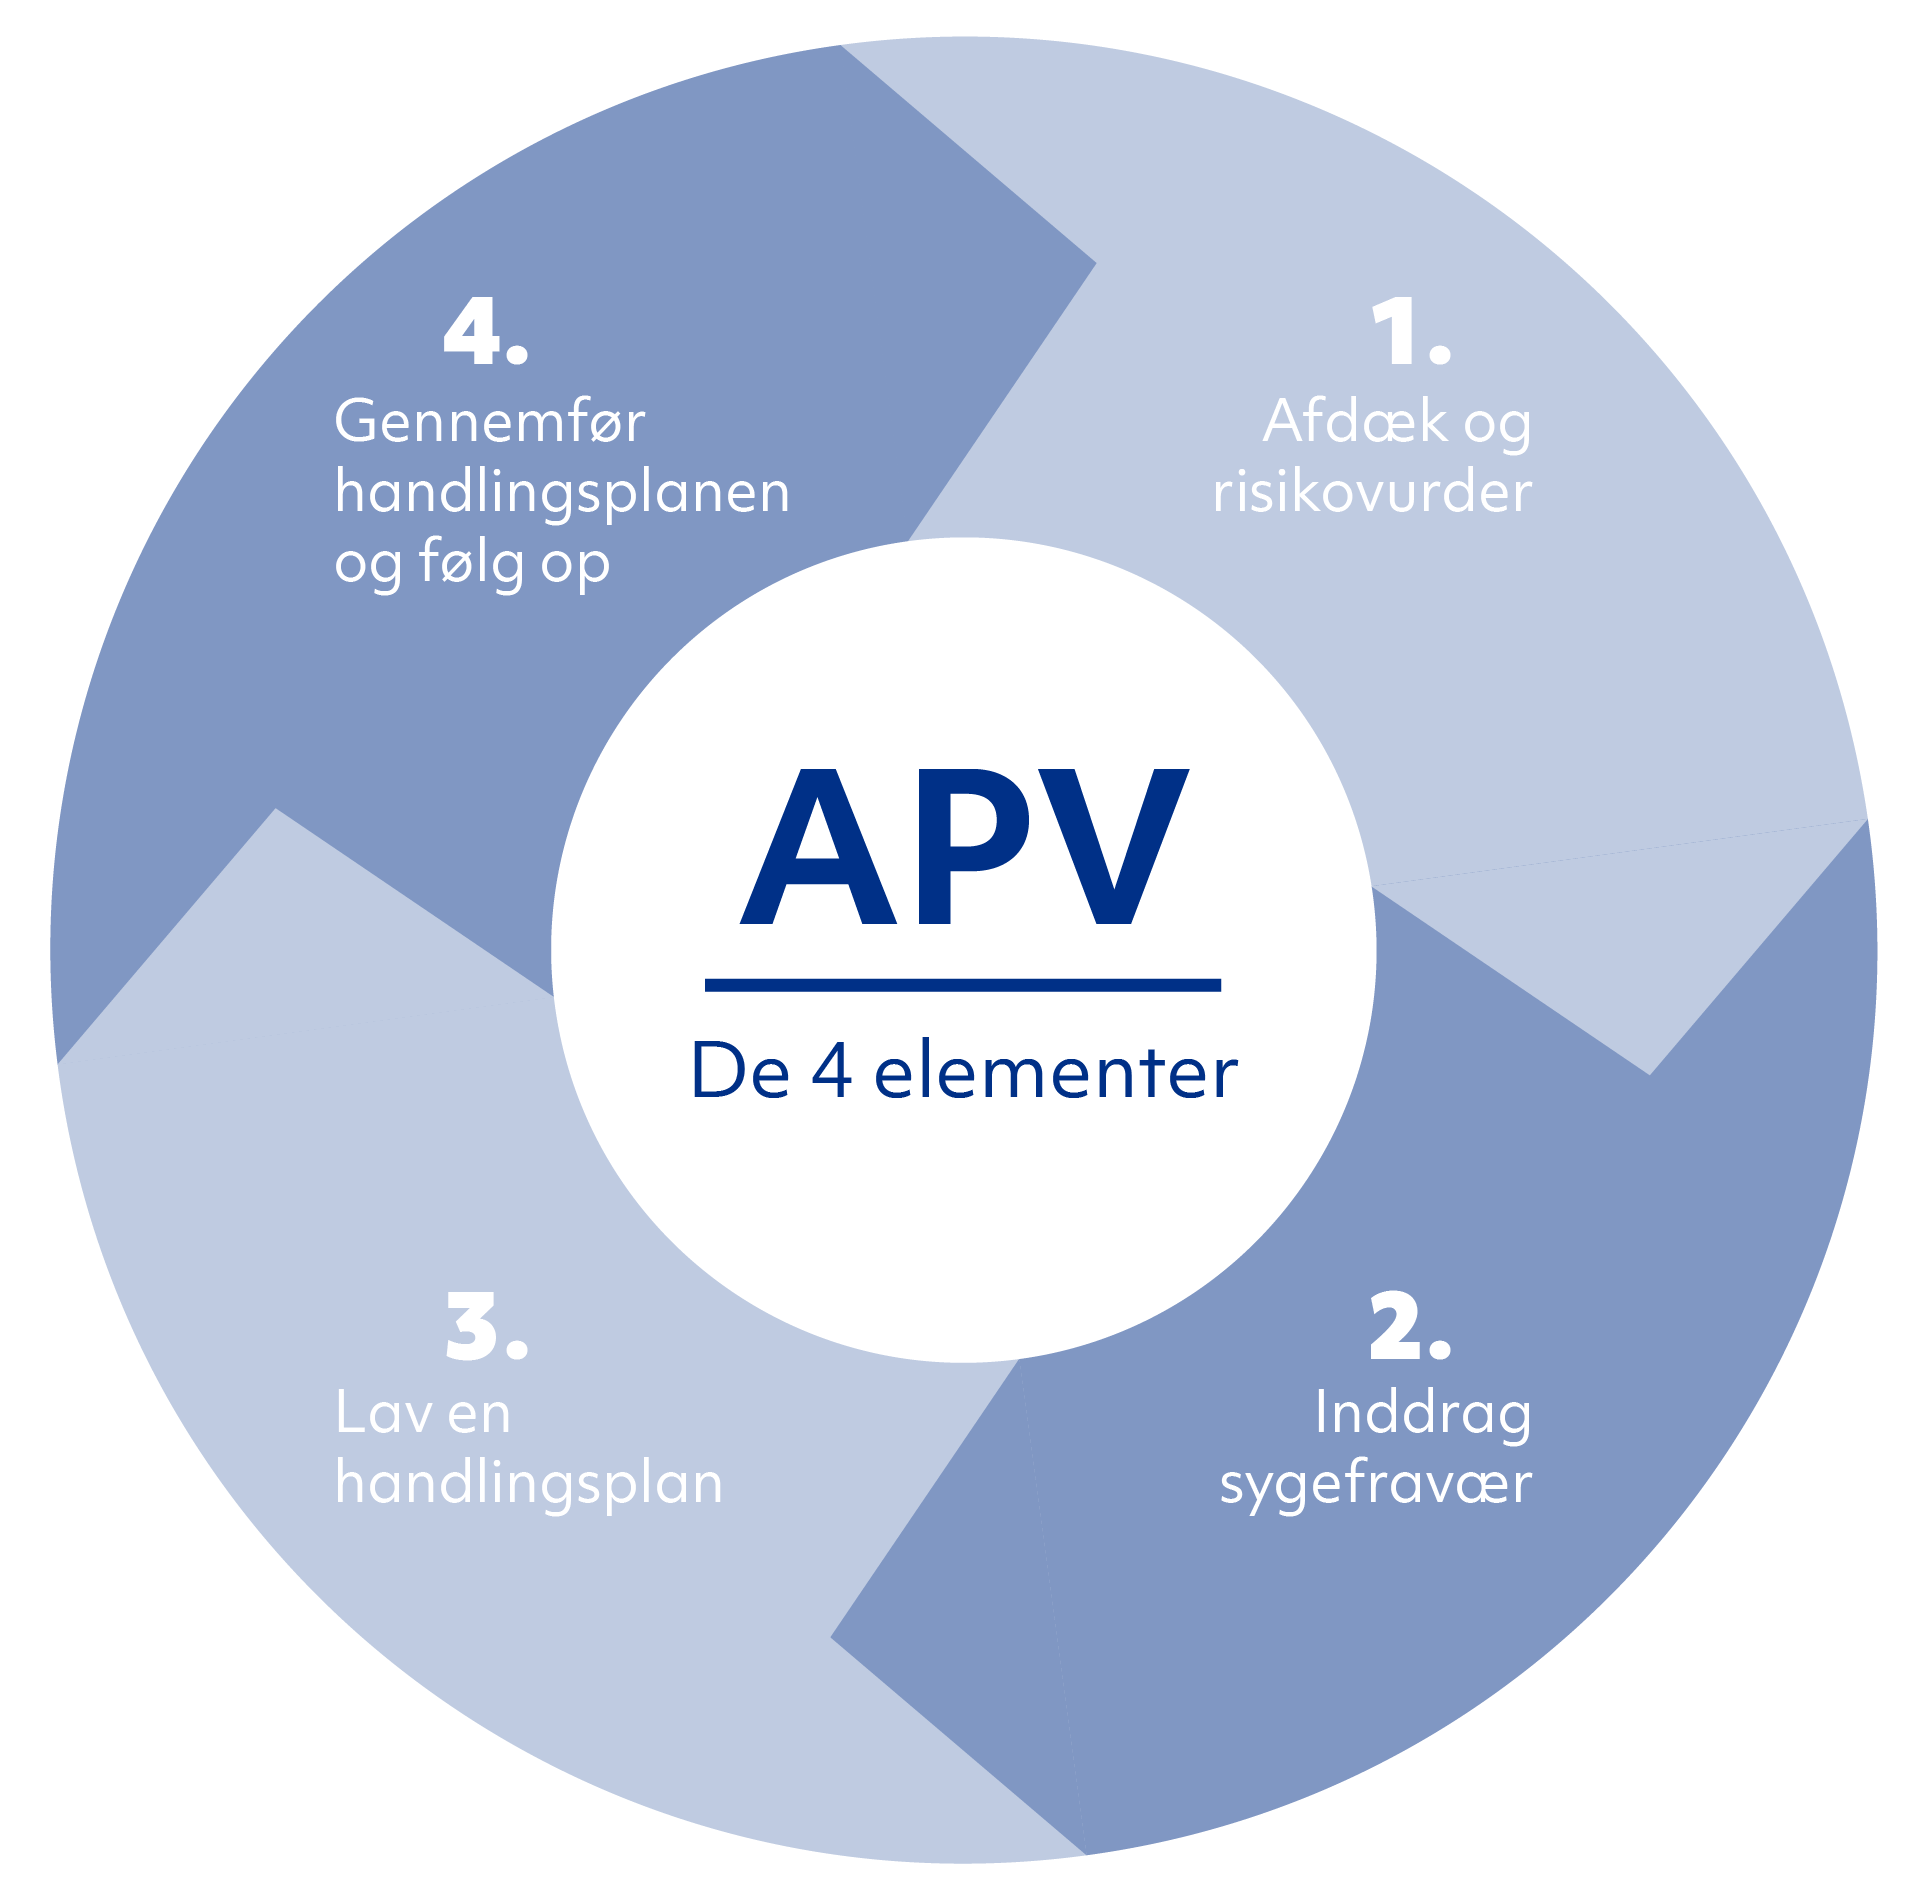 APV - De 4 elementer. 1 Afdæk og risikovurdér, 2 Inddrag sygefravær, 3 Lav en handlingsplan, 4 Gennemfør handlingsplanen og følg op